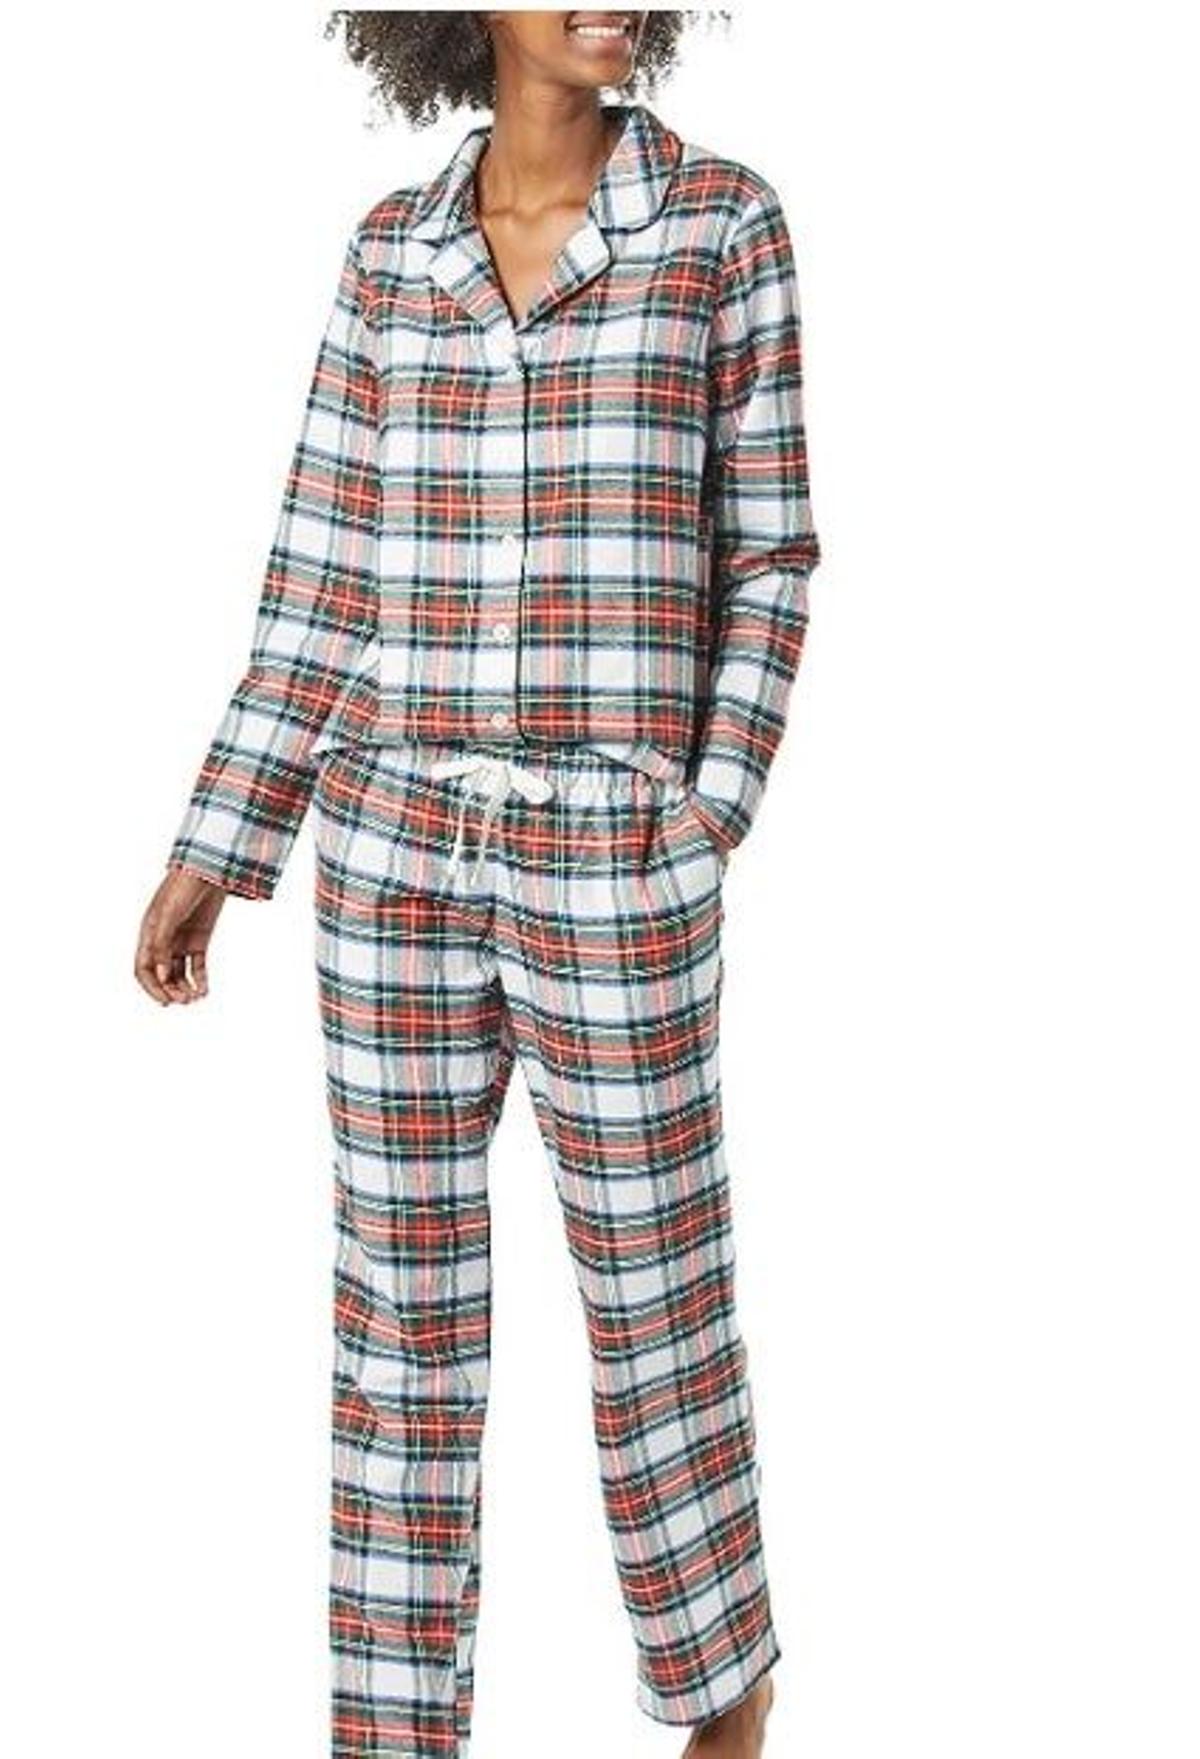 Pijama calentito de Amazon (Precio: 23,49 euros)